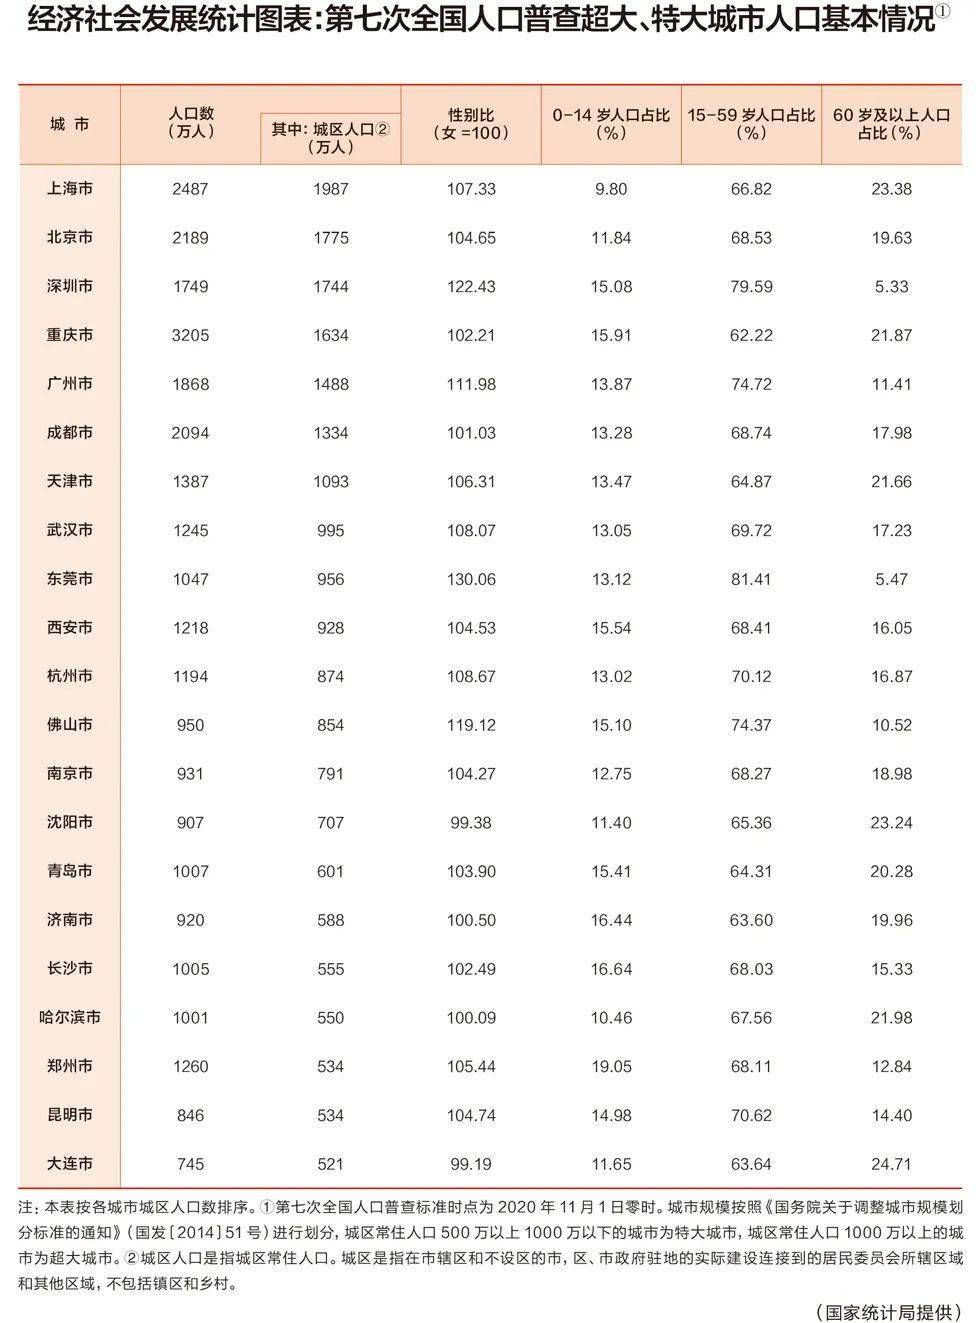 东莞工厂排行_2021年1-6月东莞房地产企业销售业绩排行榜